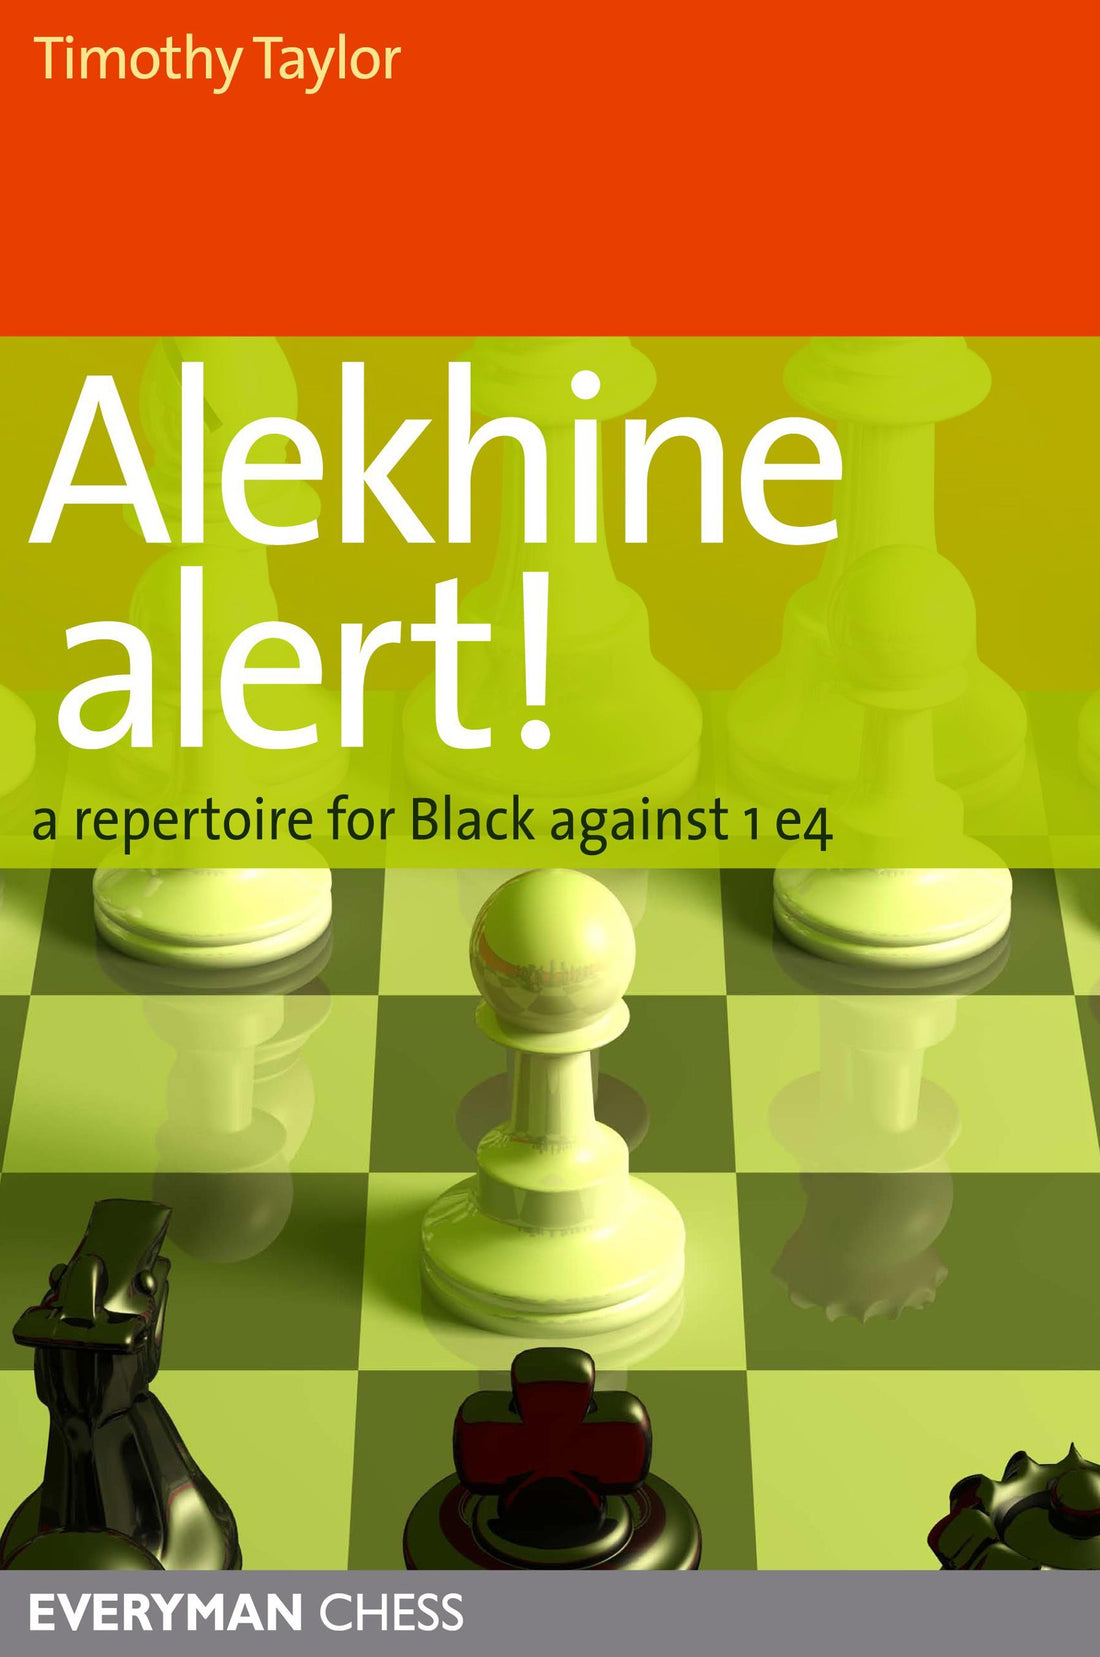 Alekhine Alert!: A repertoire for Black against 1 e4 front cover